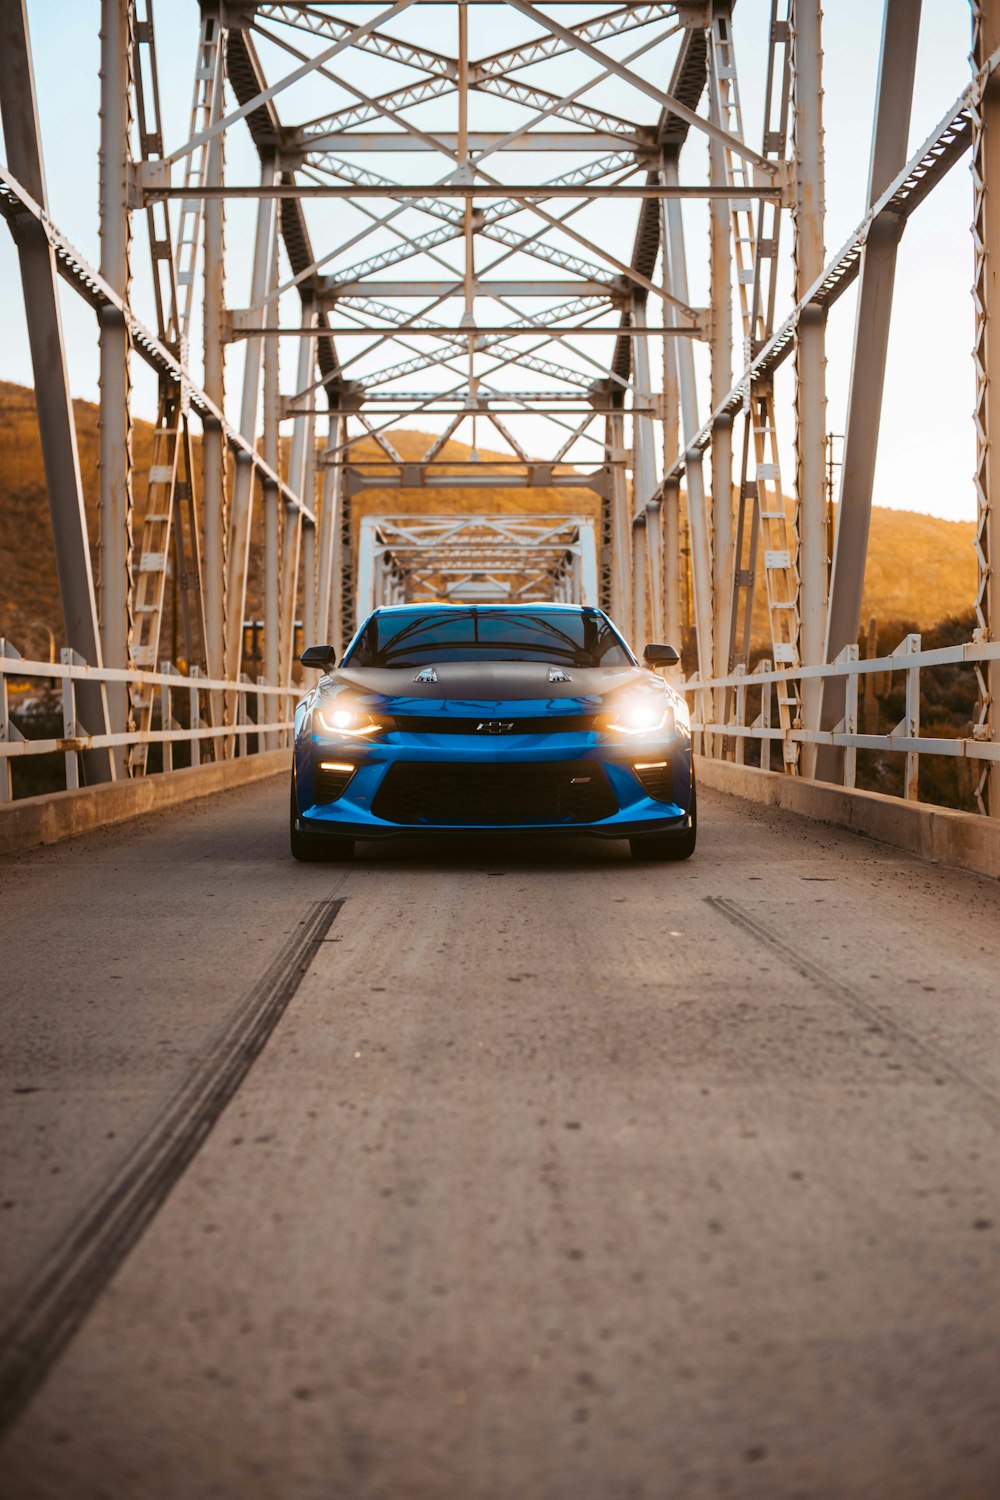 Chevrolet Camaro azul rodando na ponte durante o dia